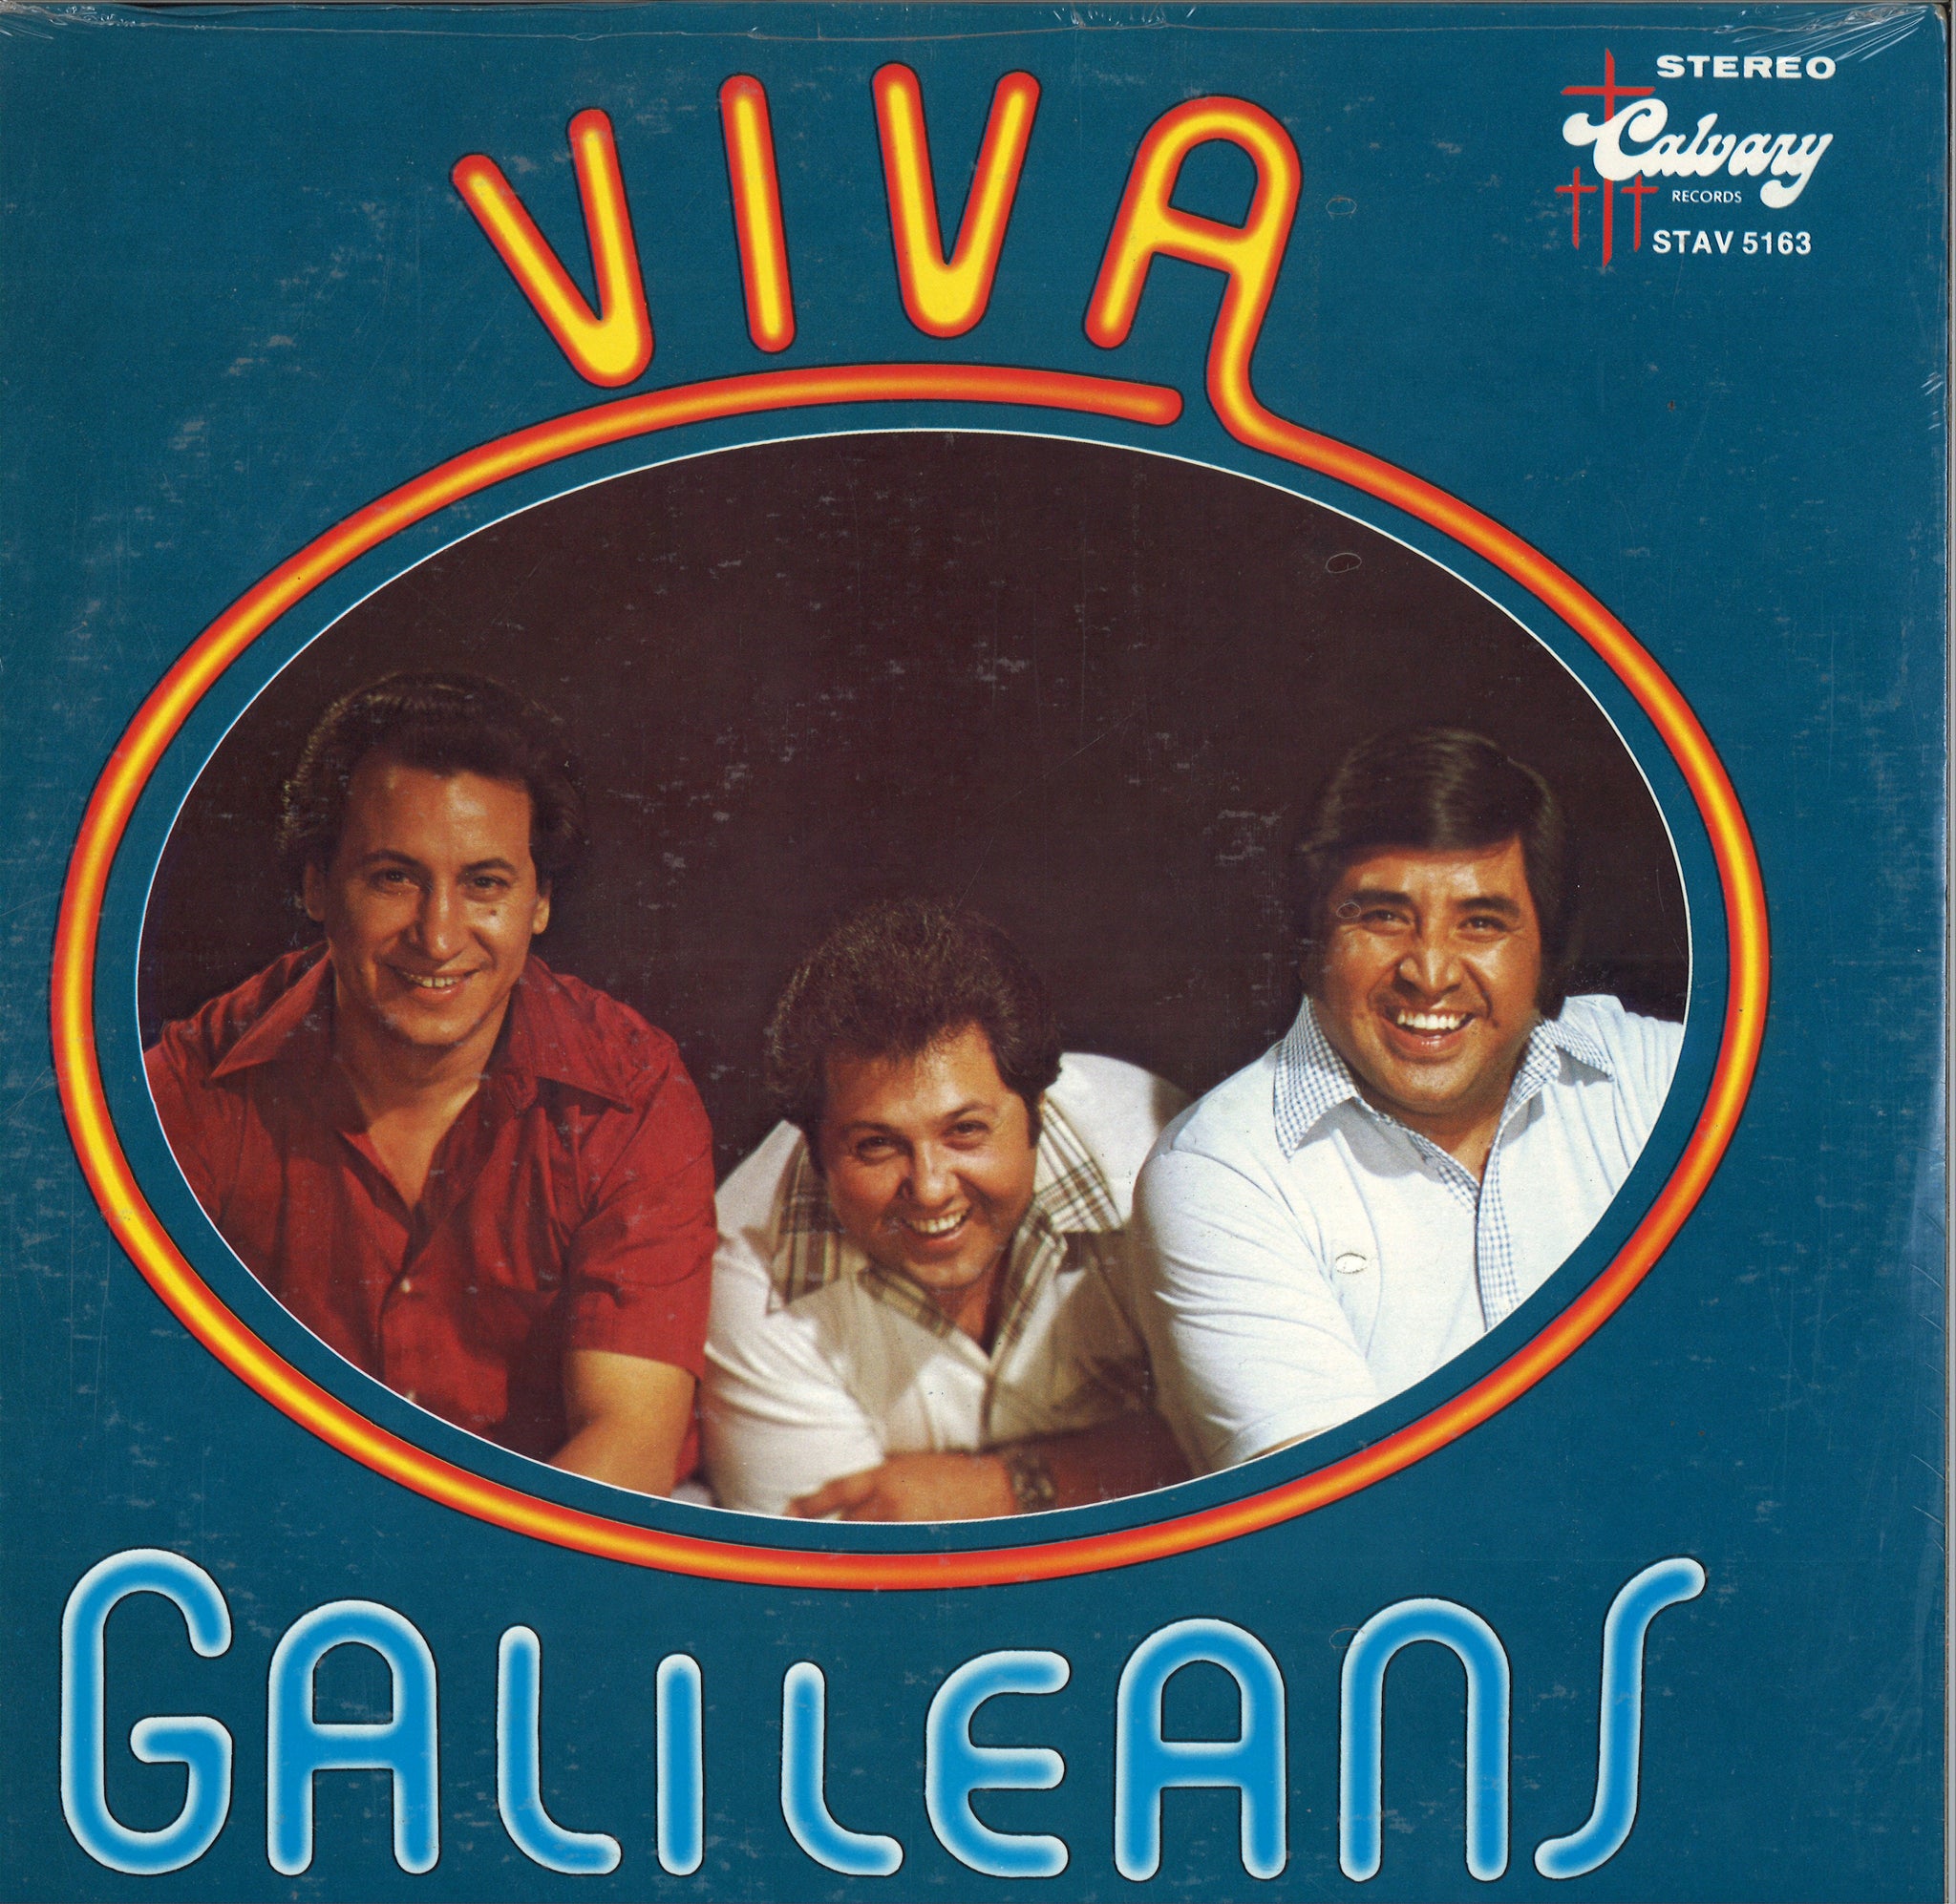 Viva Galileans